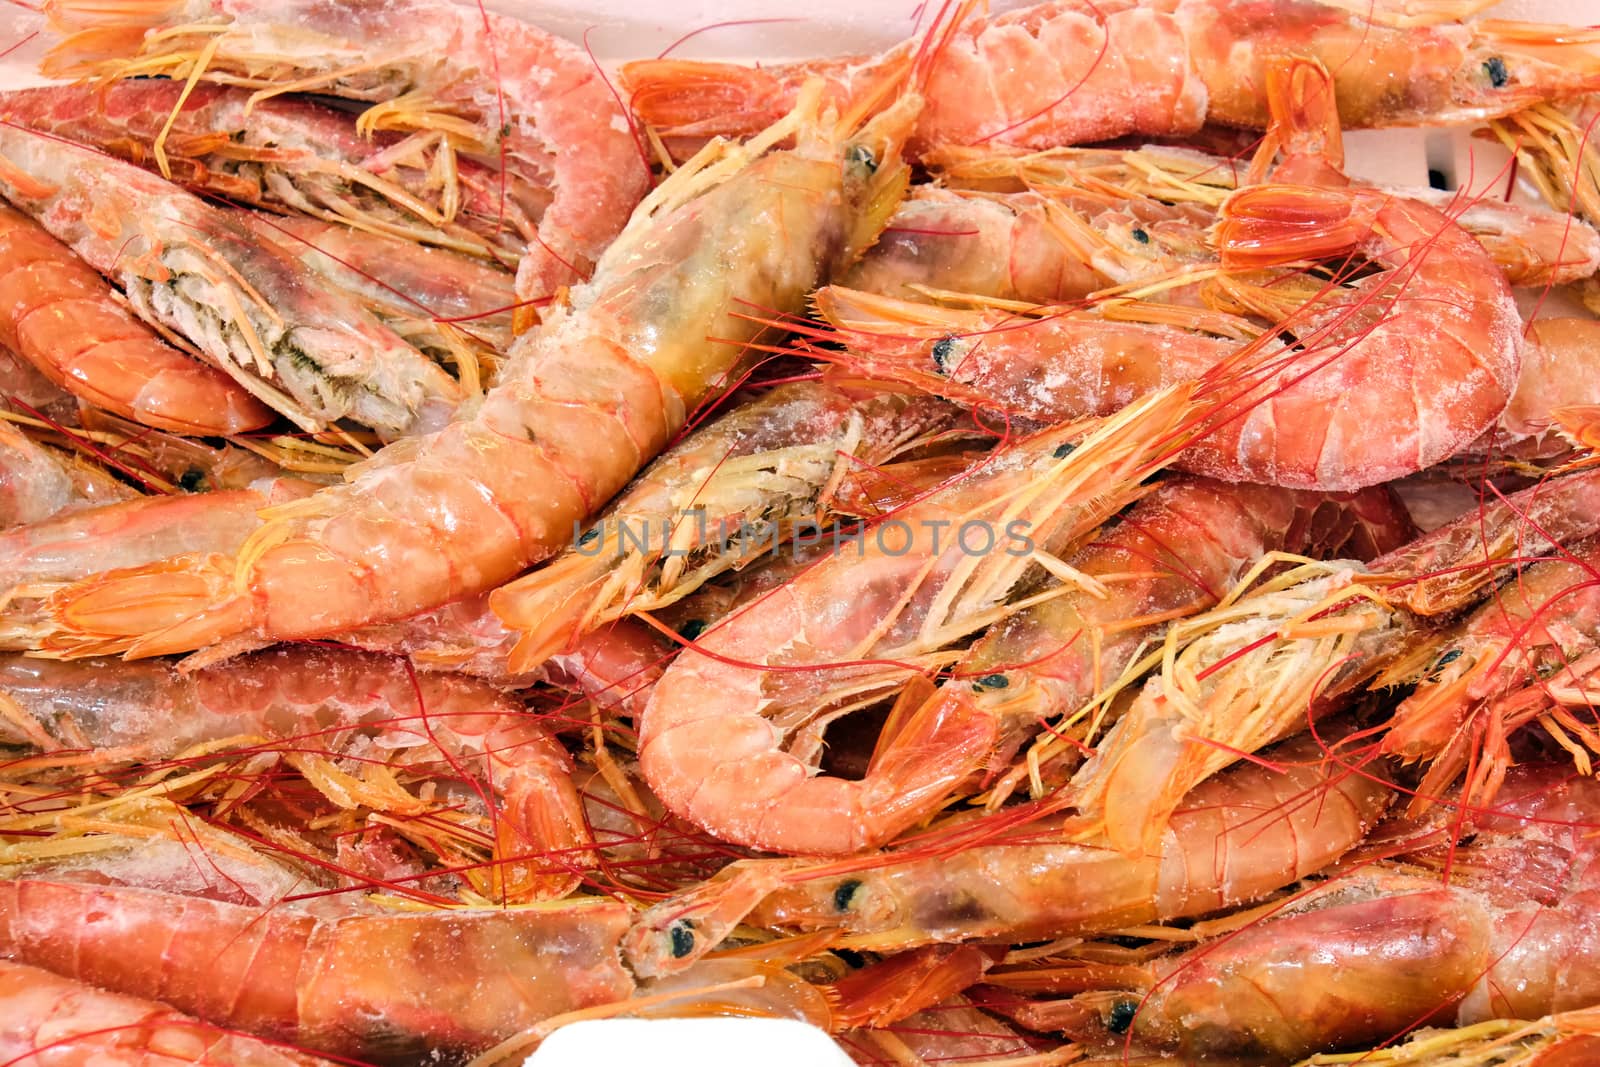 Fresh shrimps for sale at a market